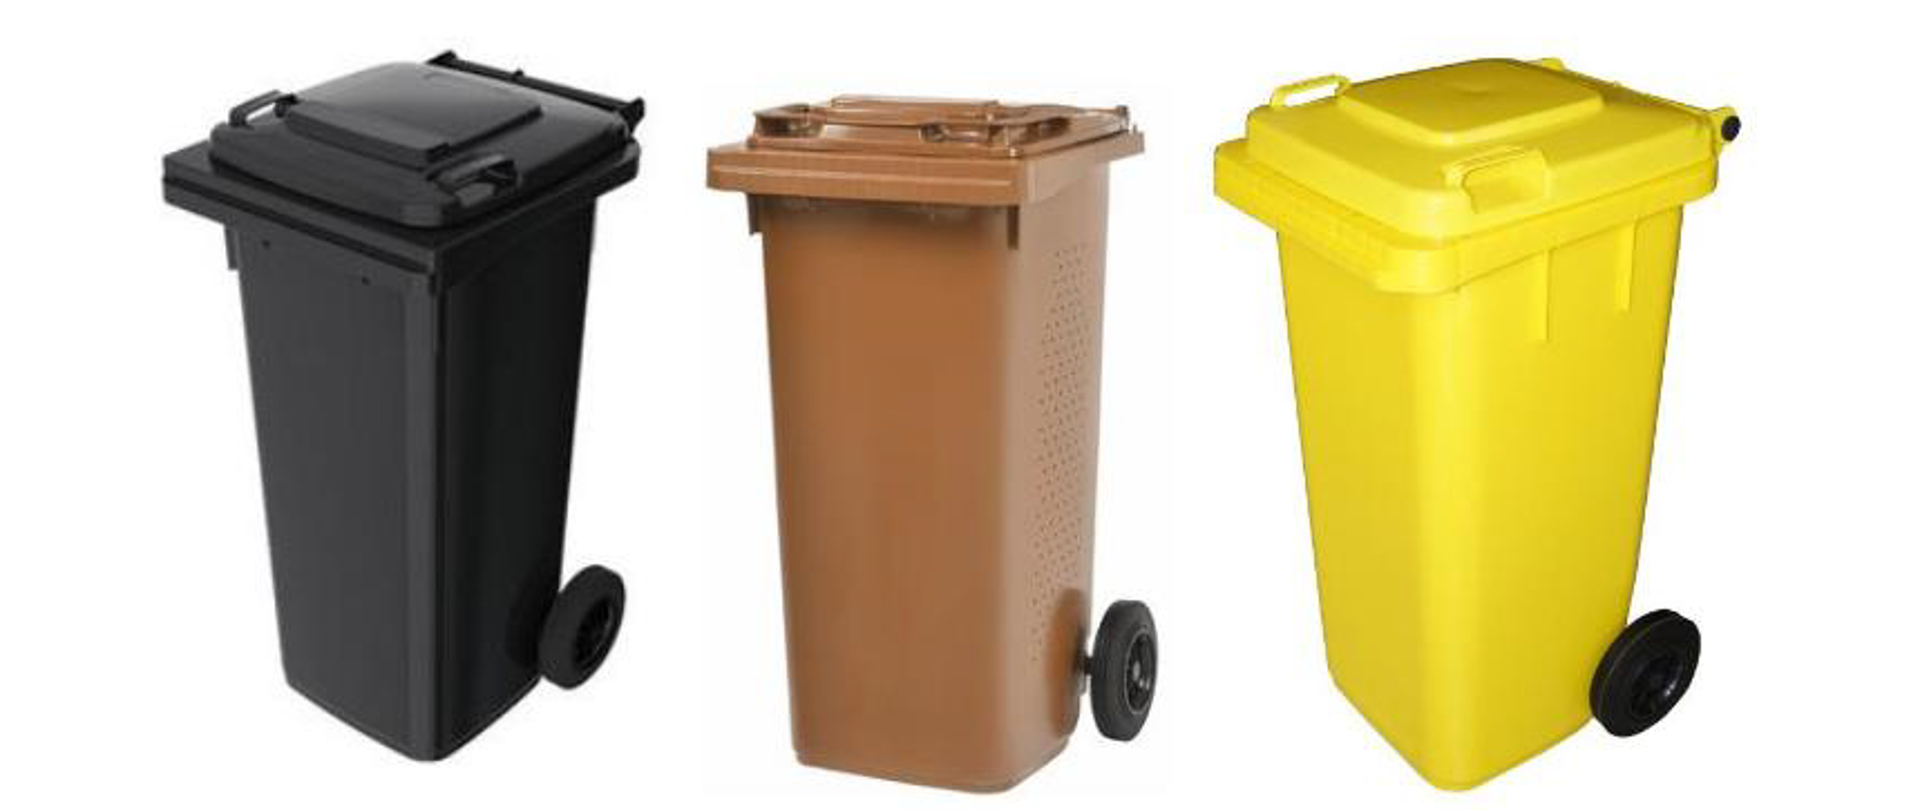 Zdjęcie trzech różnokolorowych pojemników na odpady zmieszane